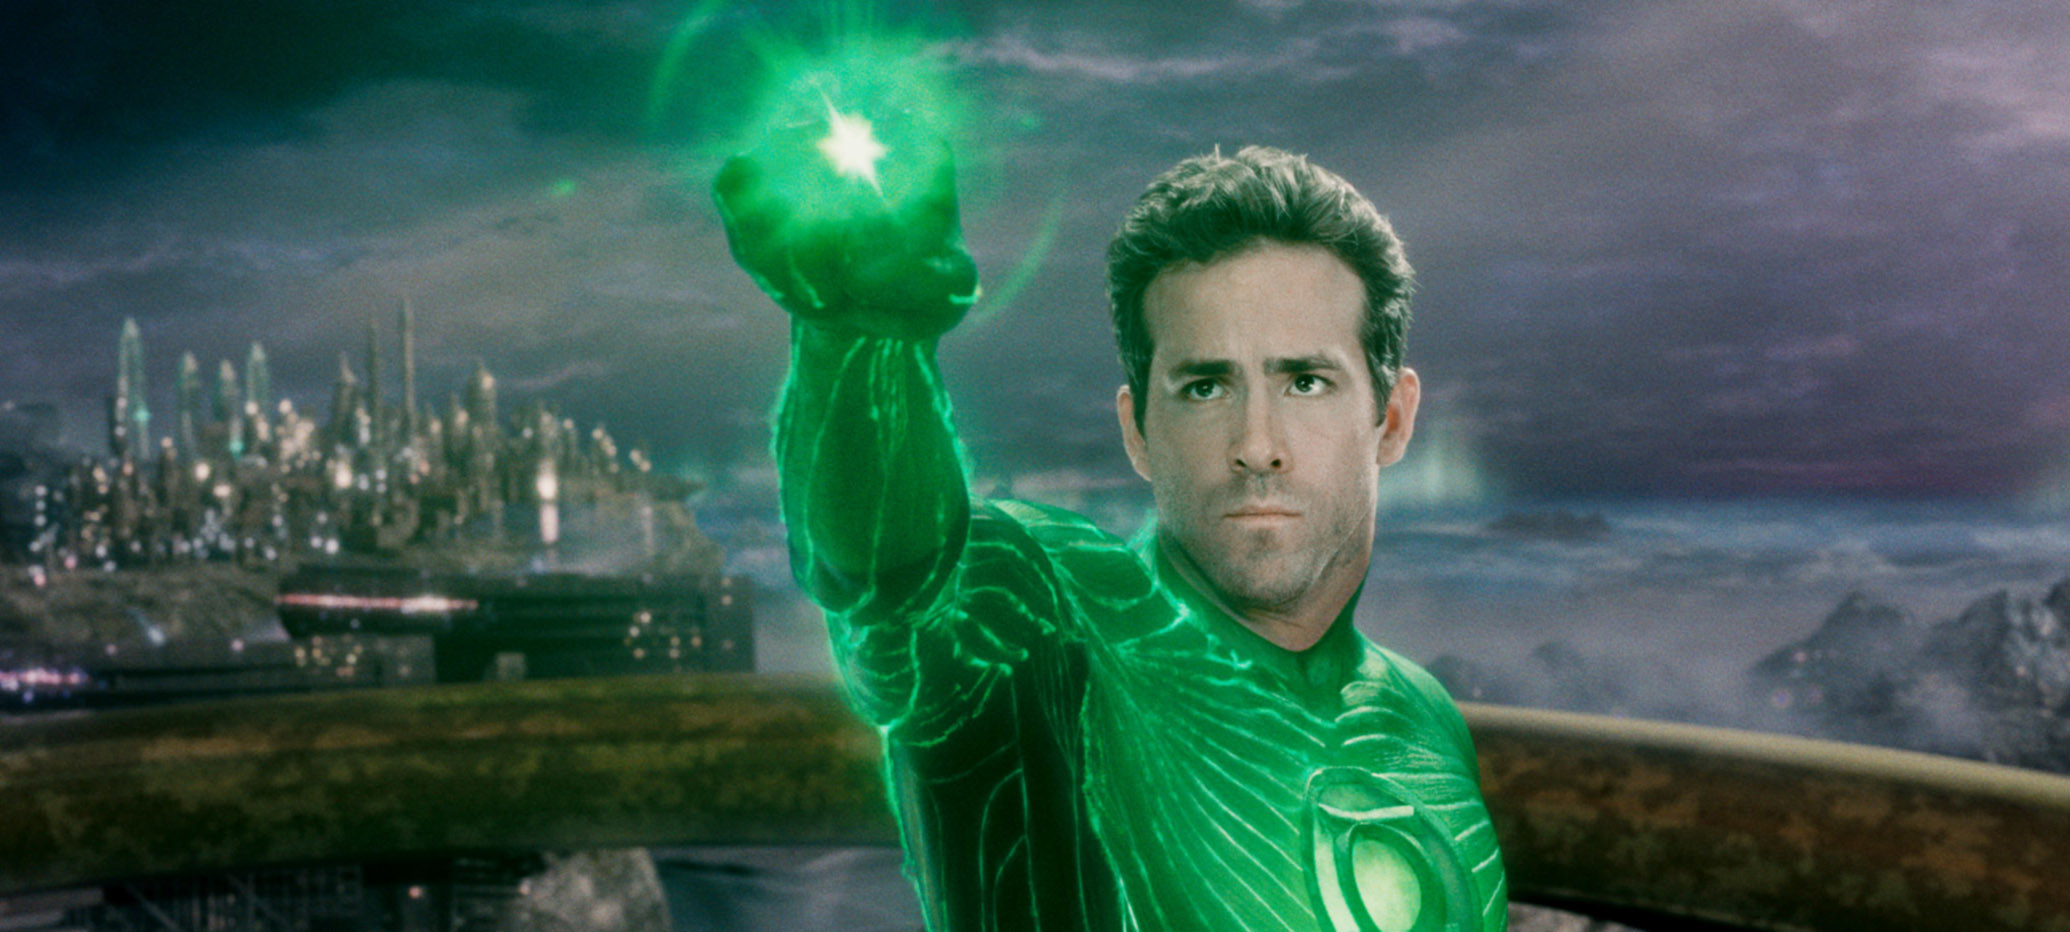 Ryan Gosling as the Green Lantern